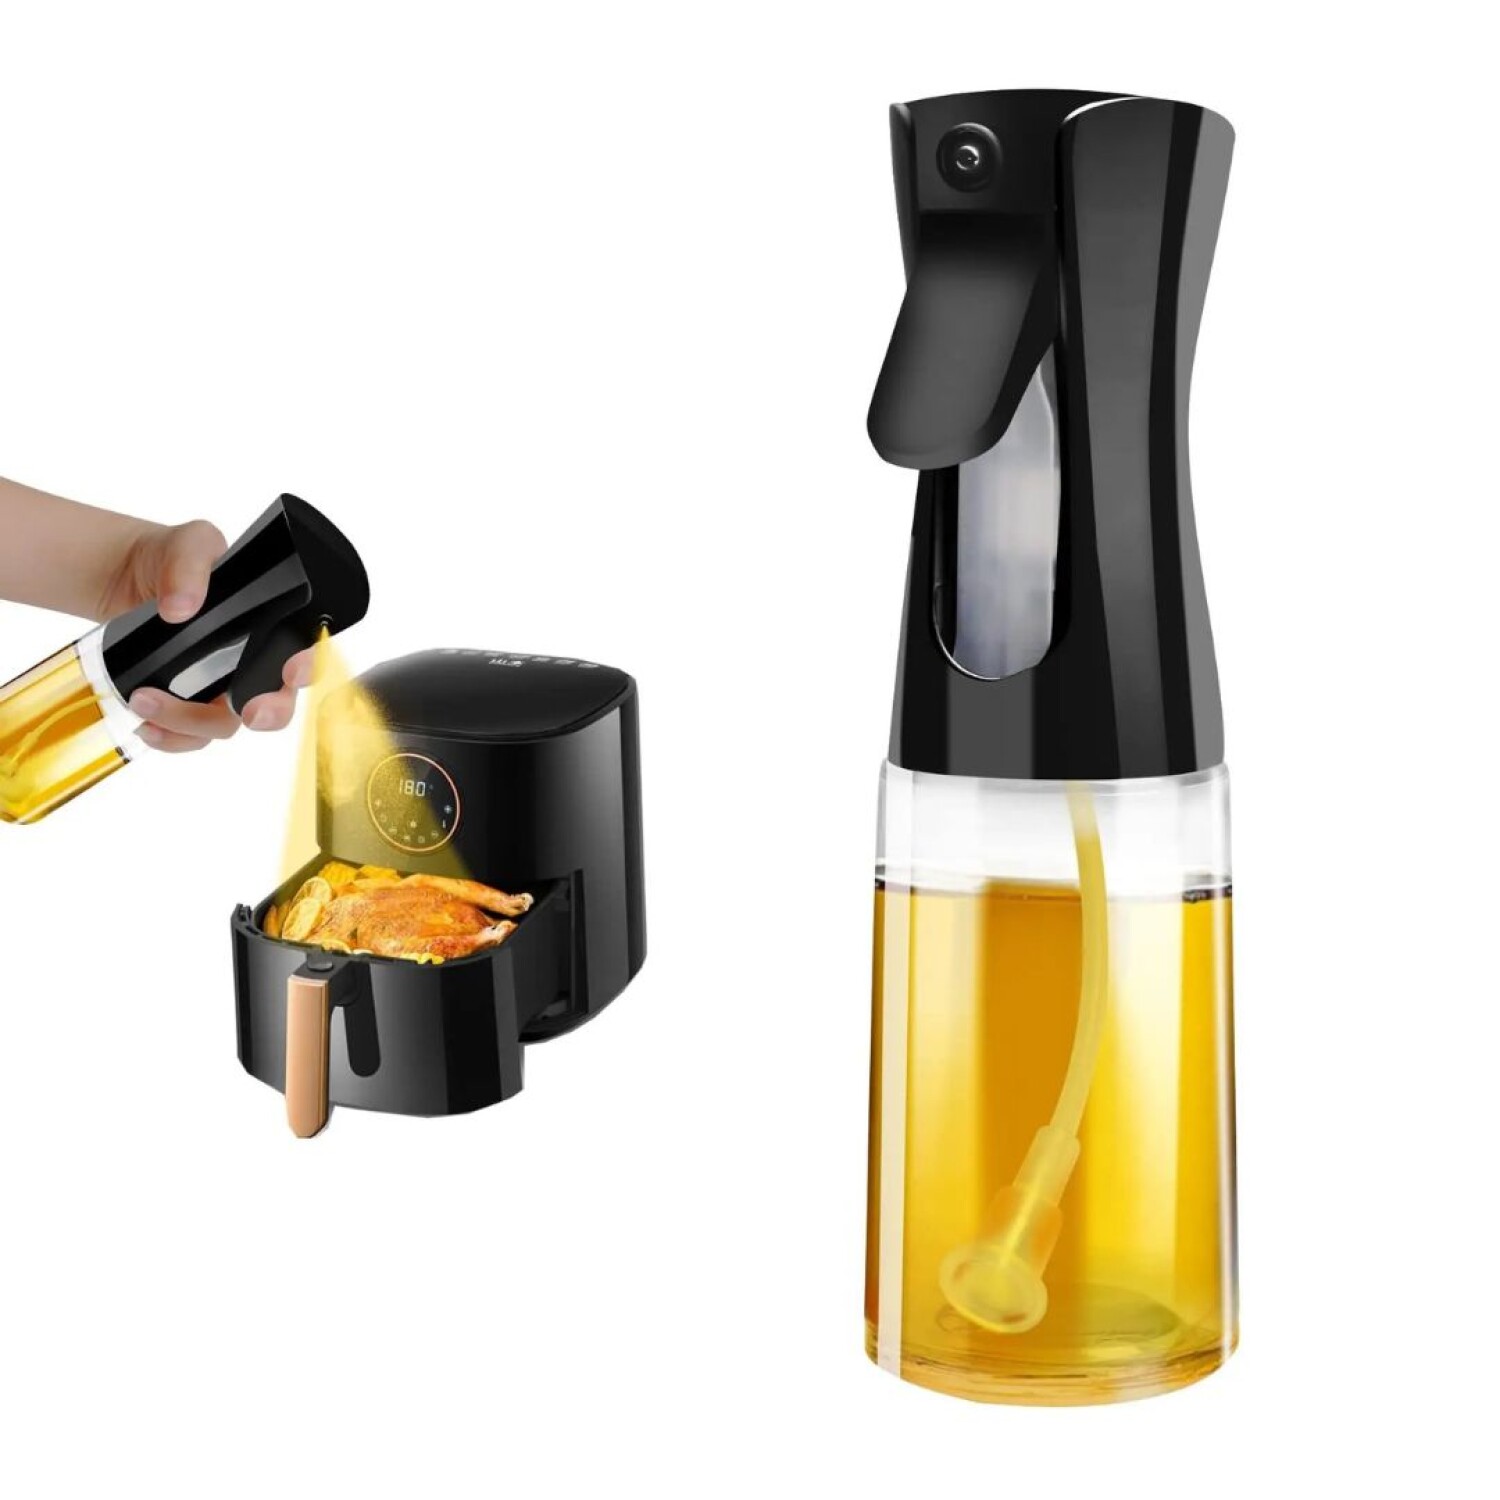 2 pulverizadores de aceite para cocinar, rociador de aceite de oliva,  dispensador de aceite para cocina, dispensador de aceite de oliva, botella  de